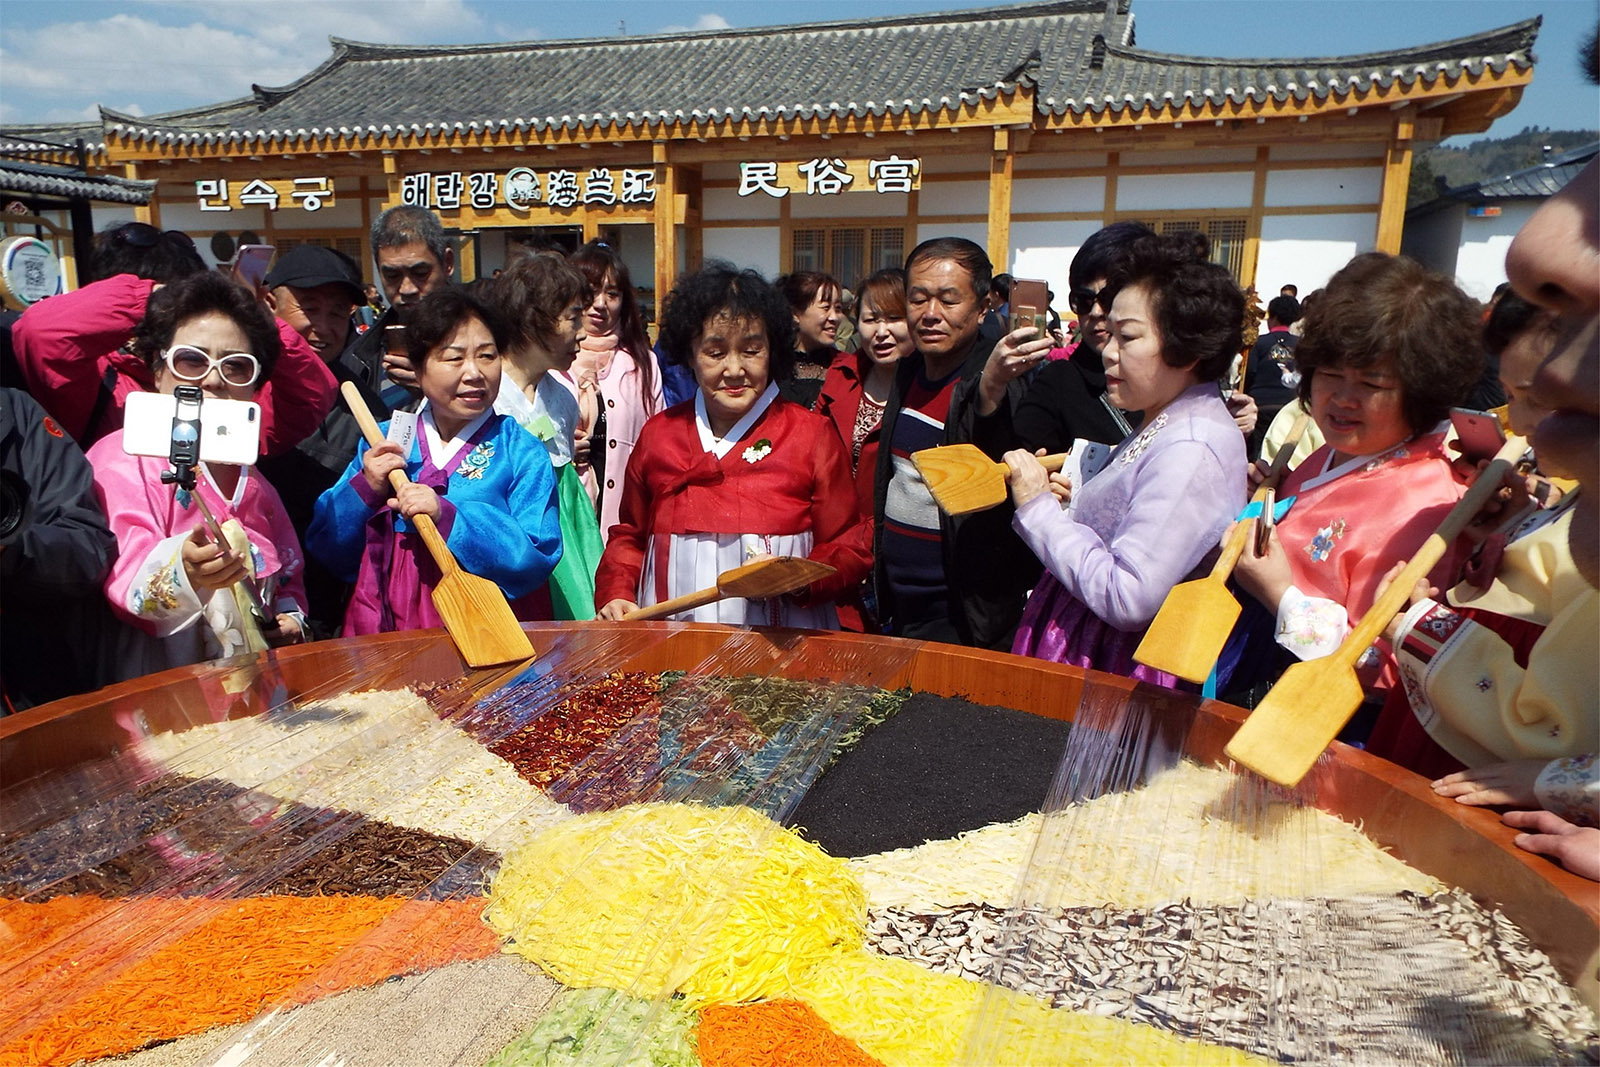 池光一(高中組)吉林《朝鮮族民俗》這是我們朝鮮族一年一度的民族節日，大家圍在一起慶祝自己的豐收節。搜索復制